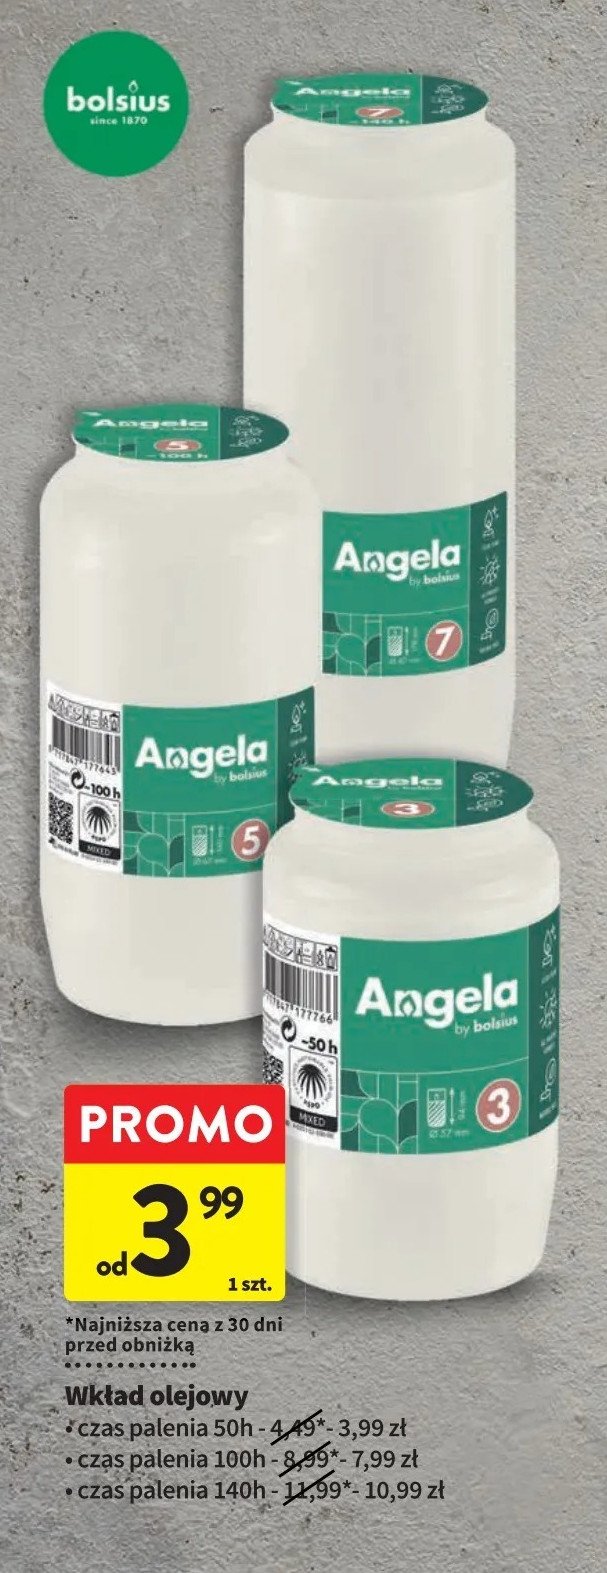 Wkład olejowy 50h Angela promocja